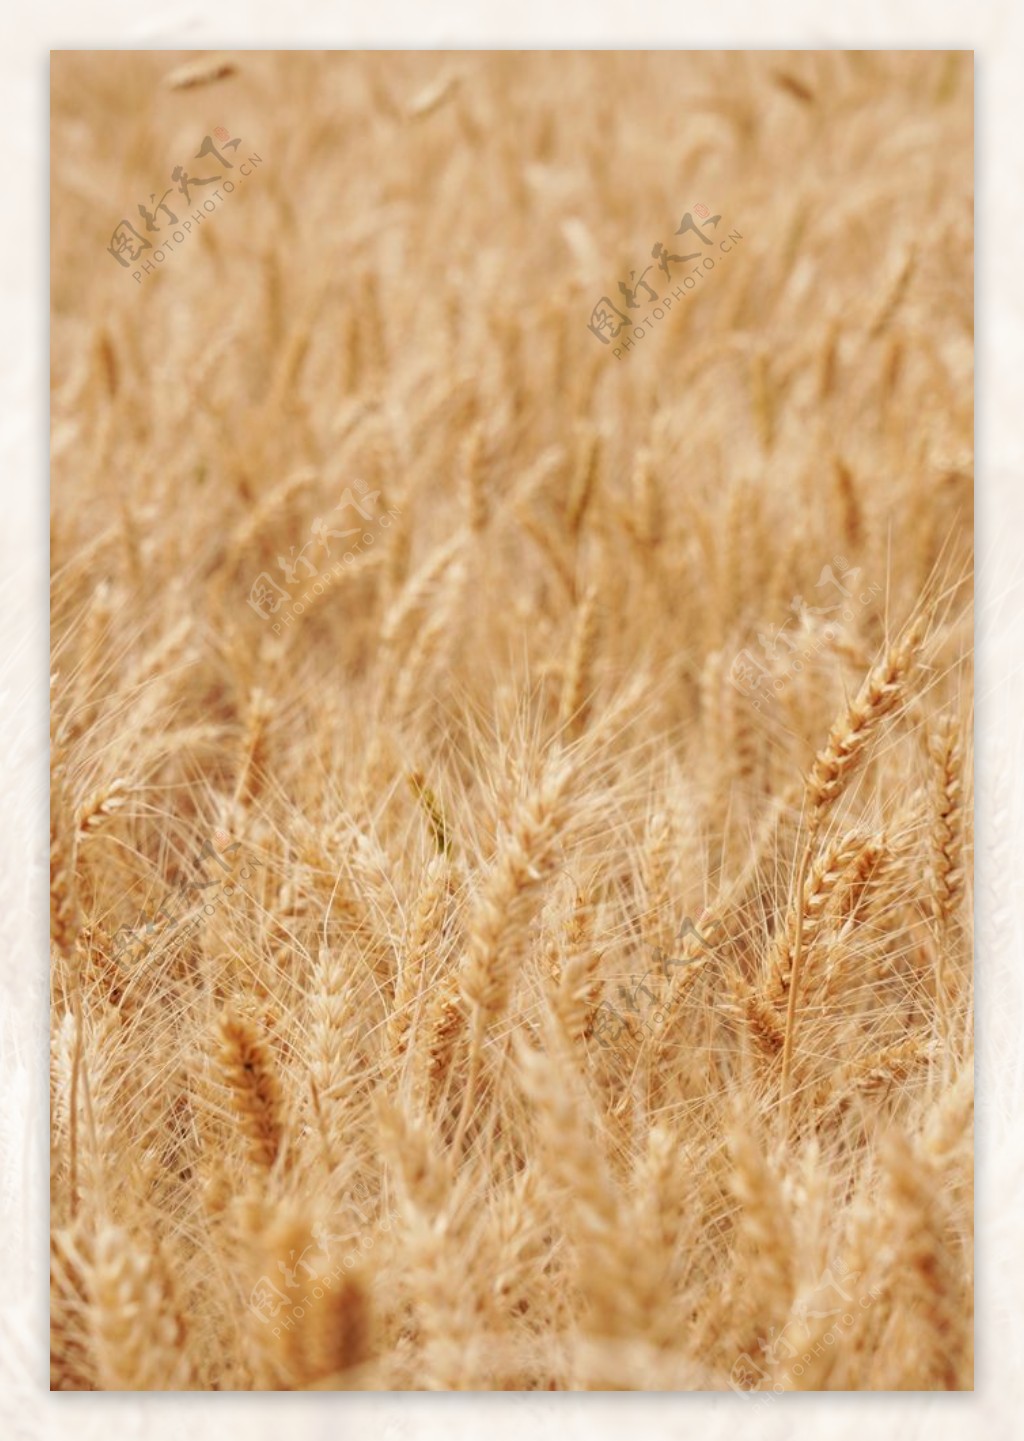 小麦成熟摄影图高清摄影大图-千库网